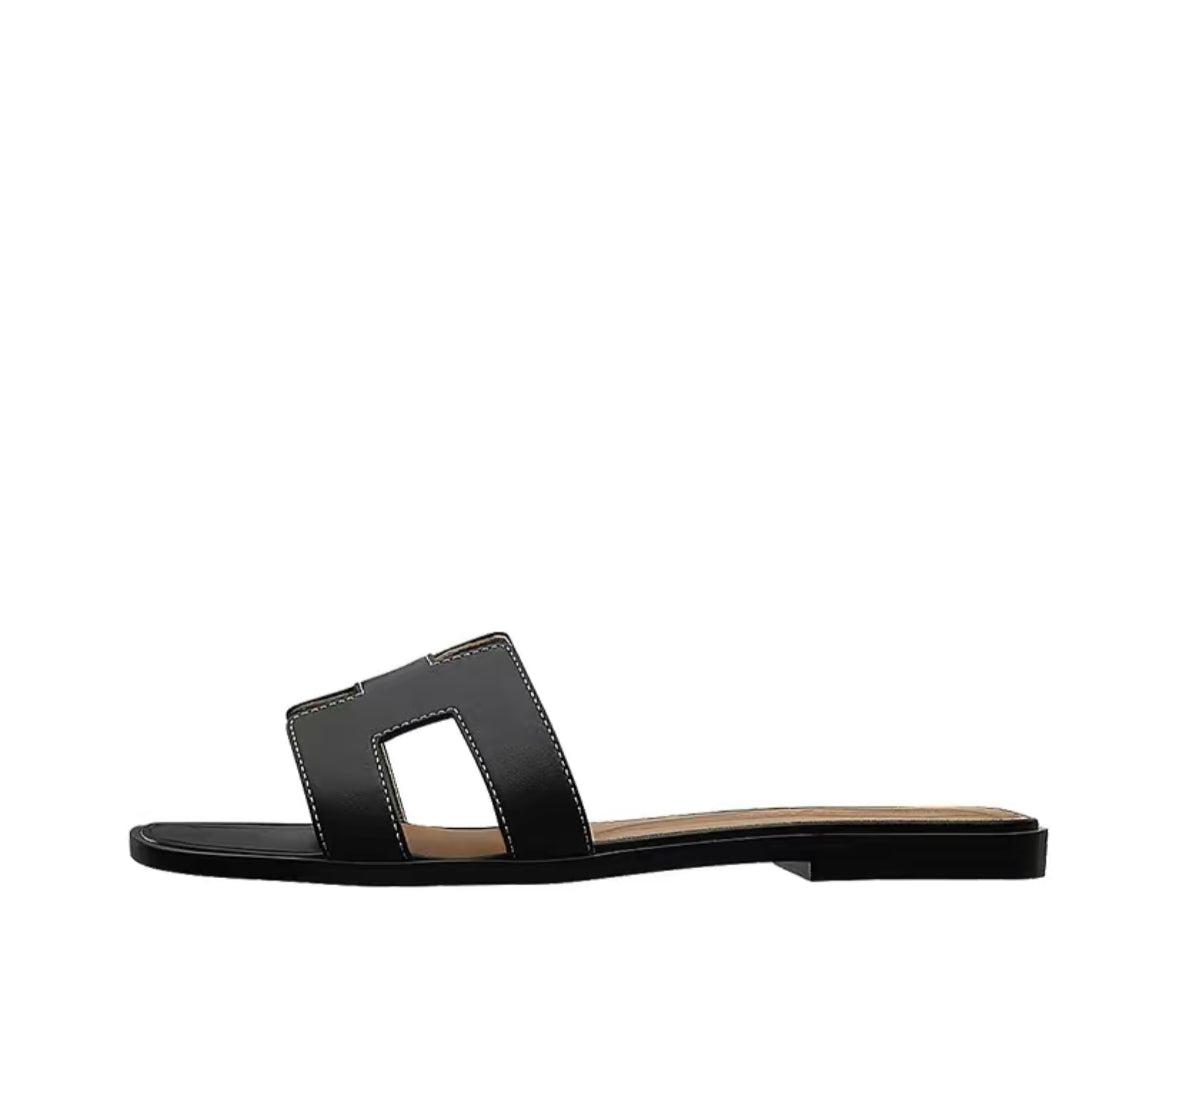 Hermes Oran Sandals “Black/Brown”